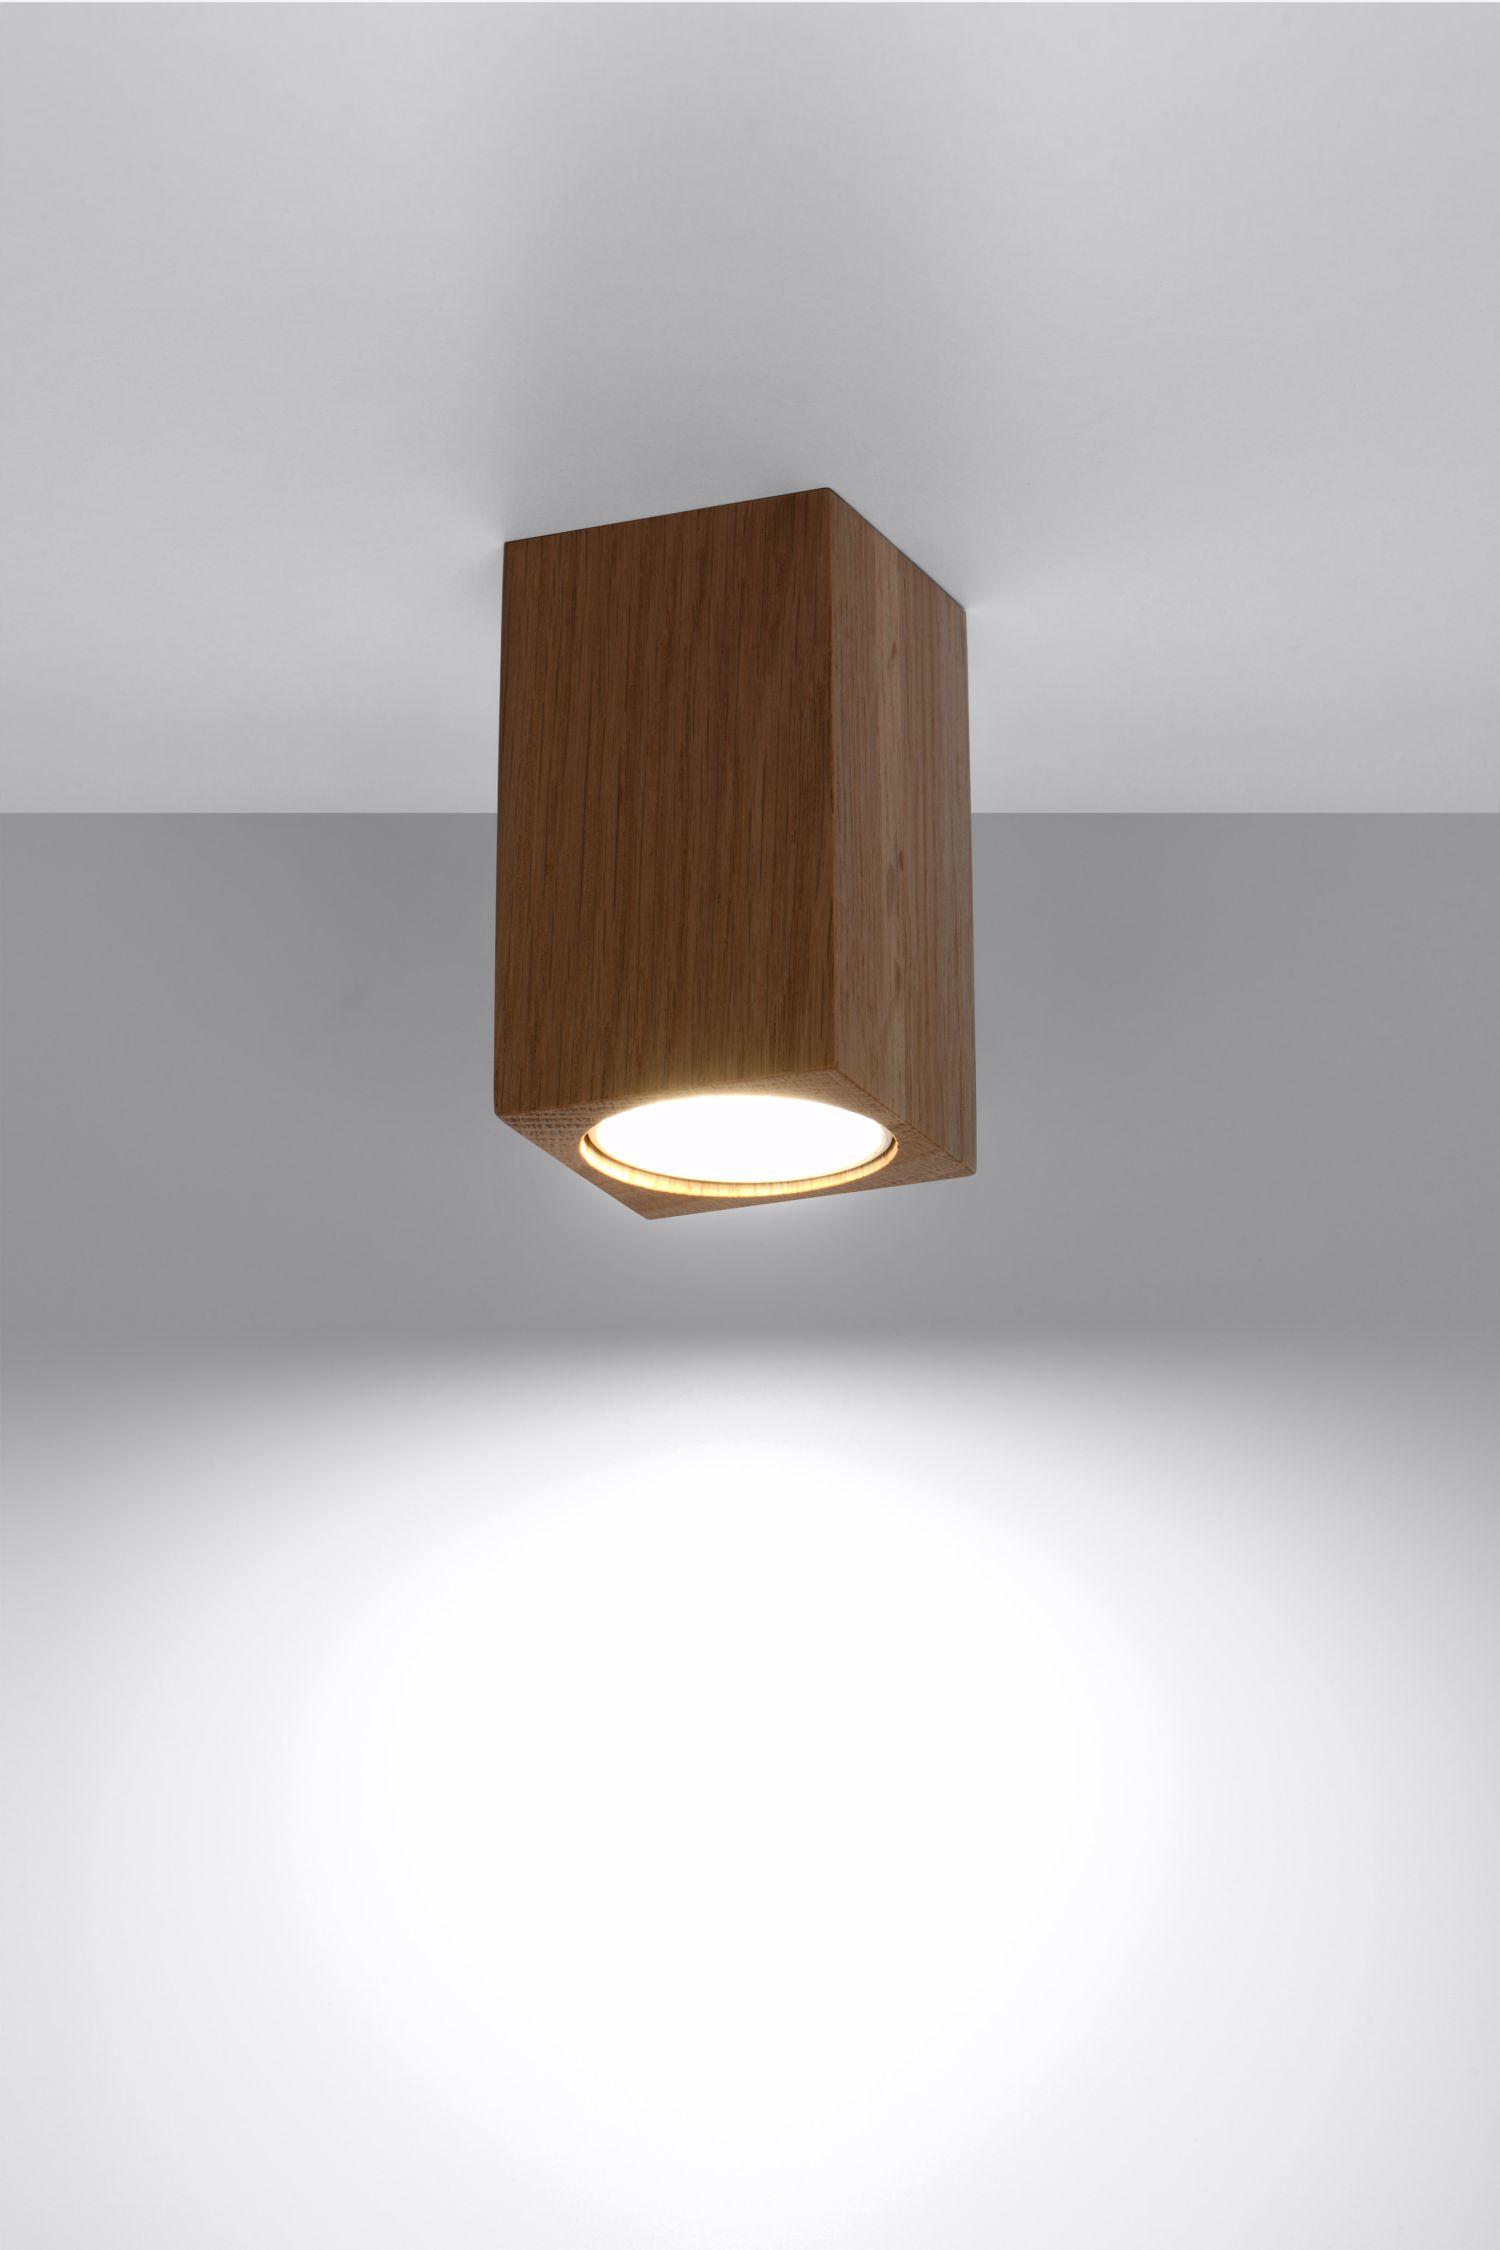 Spot Lampe Decke Holz klein H: 10 cm eckig GU10